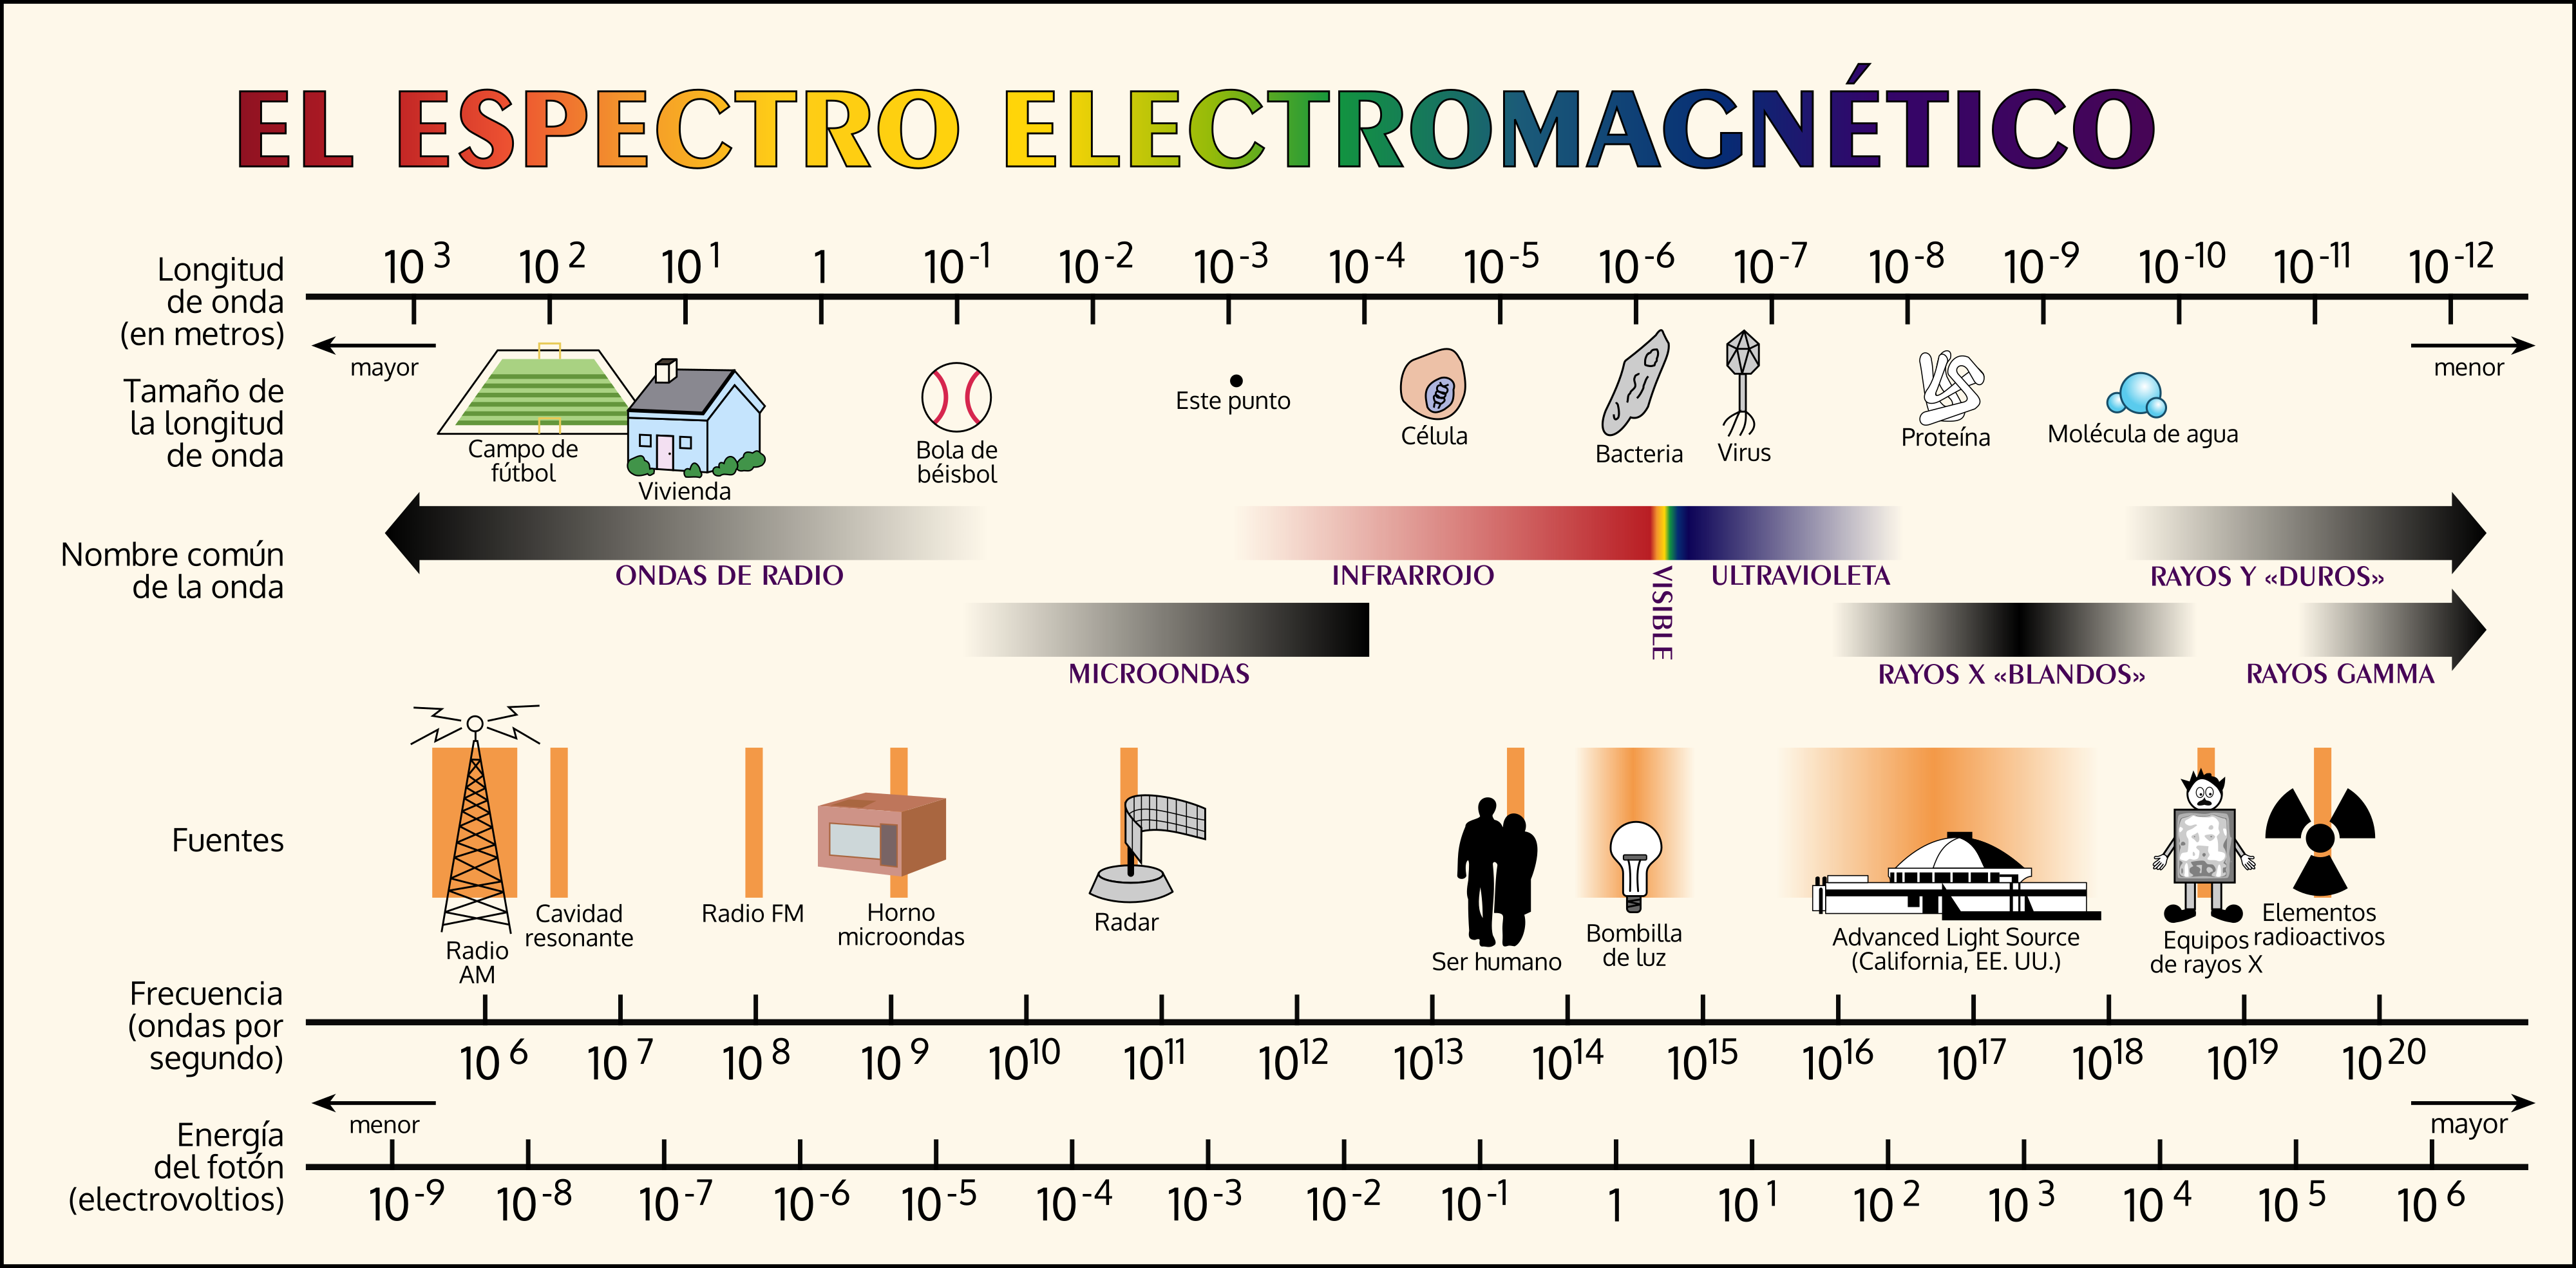 Imagen del espectro electromagnético